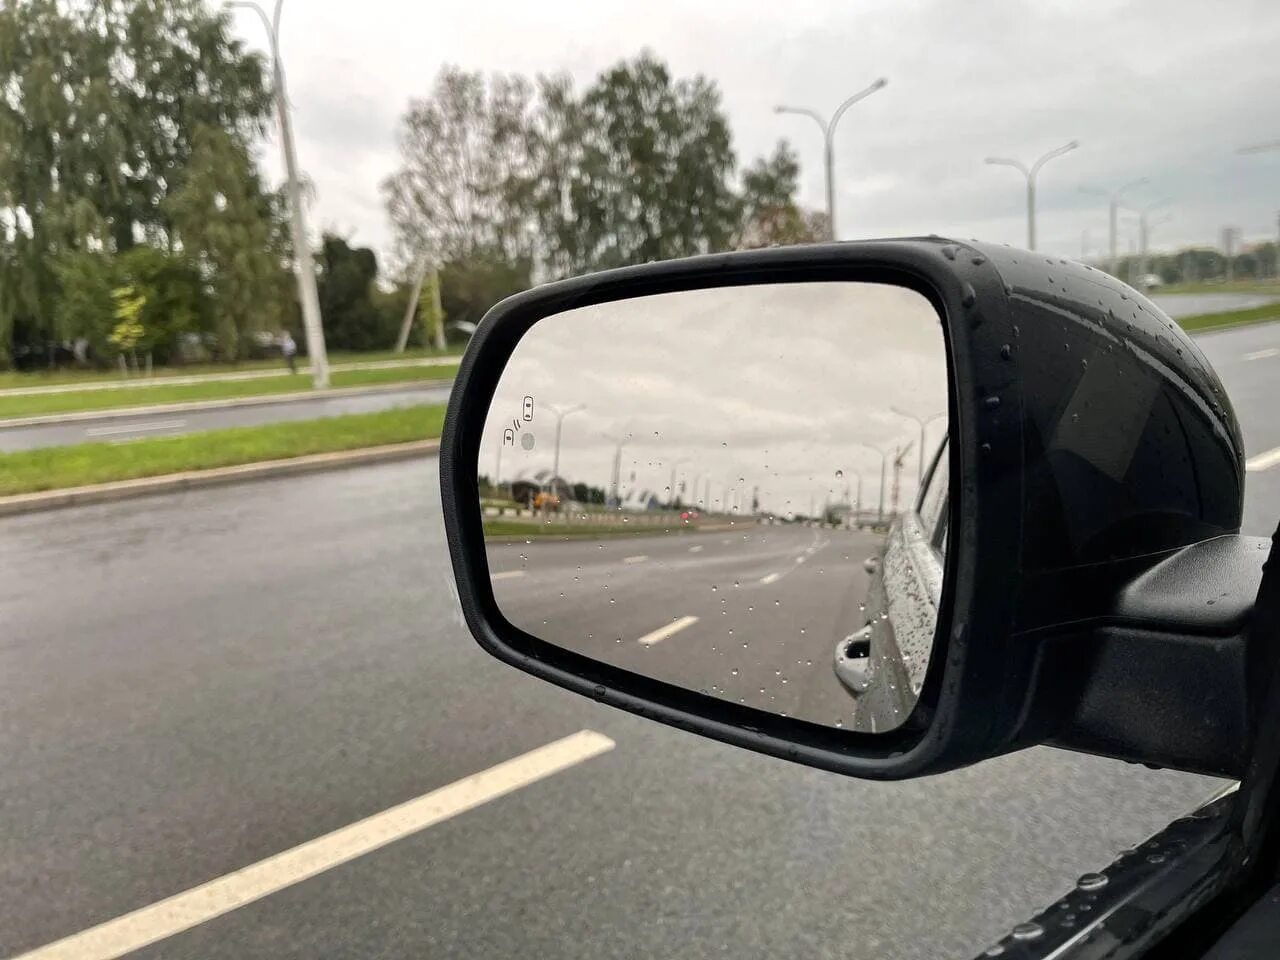 Водительское зеркало. Водитель в зеркале. Элемент на водительское зеркало на автомобиль Хайму м 3 2014 года. Оторванное водительское зеркало Exeed LX серый цвет.